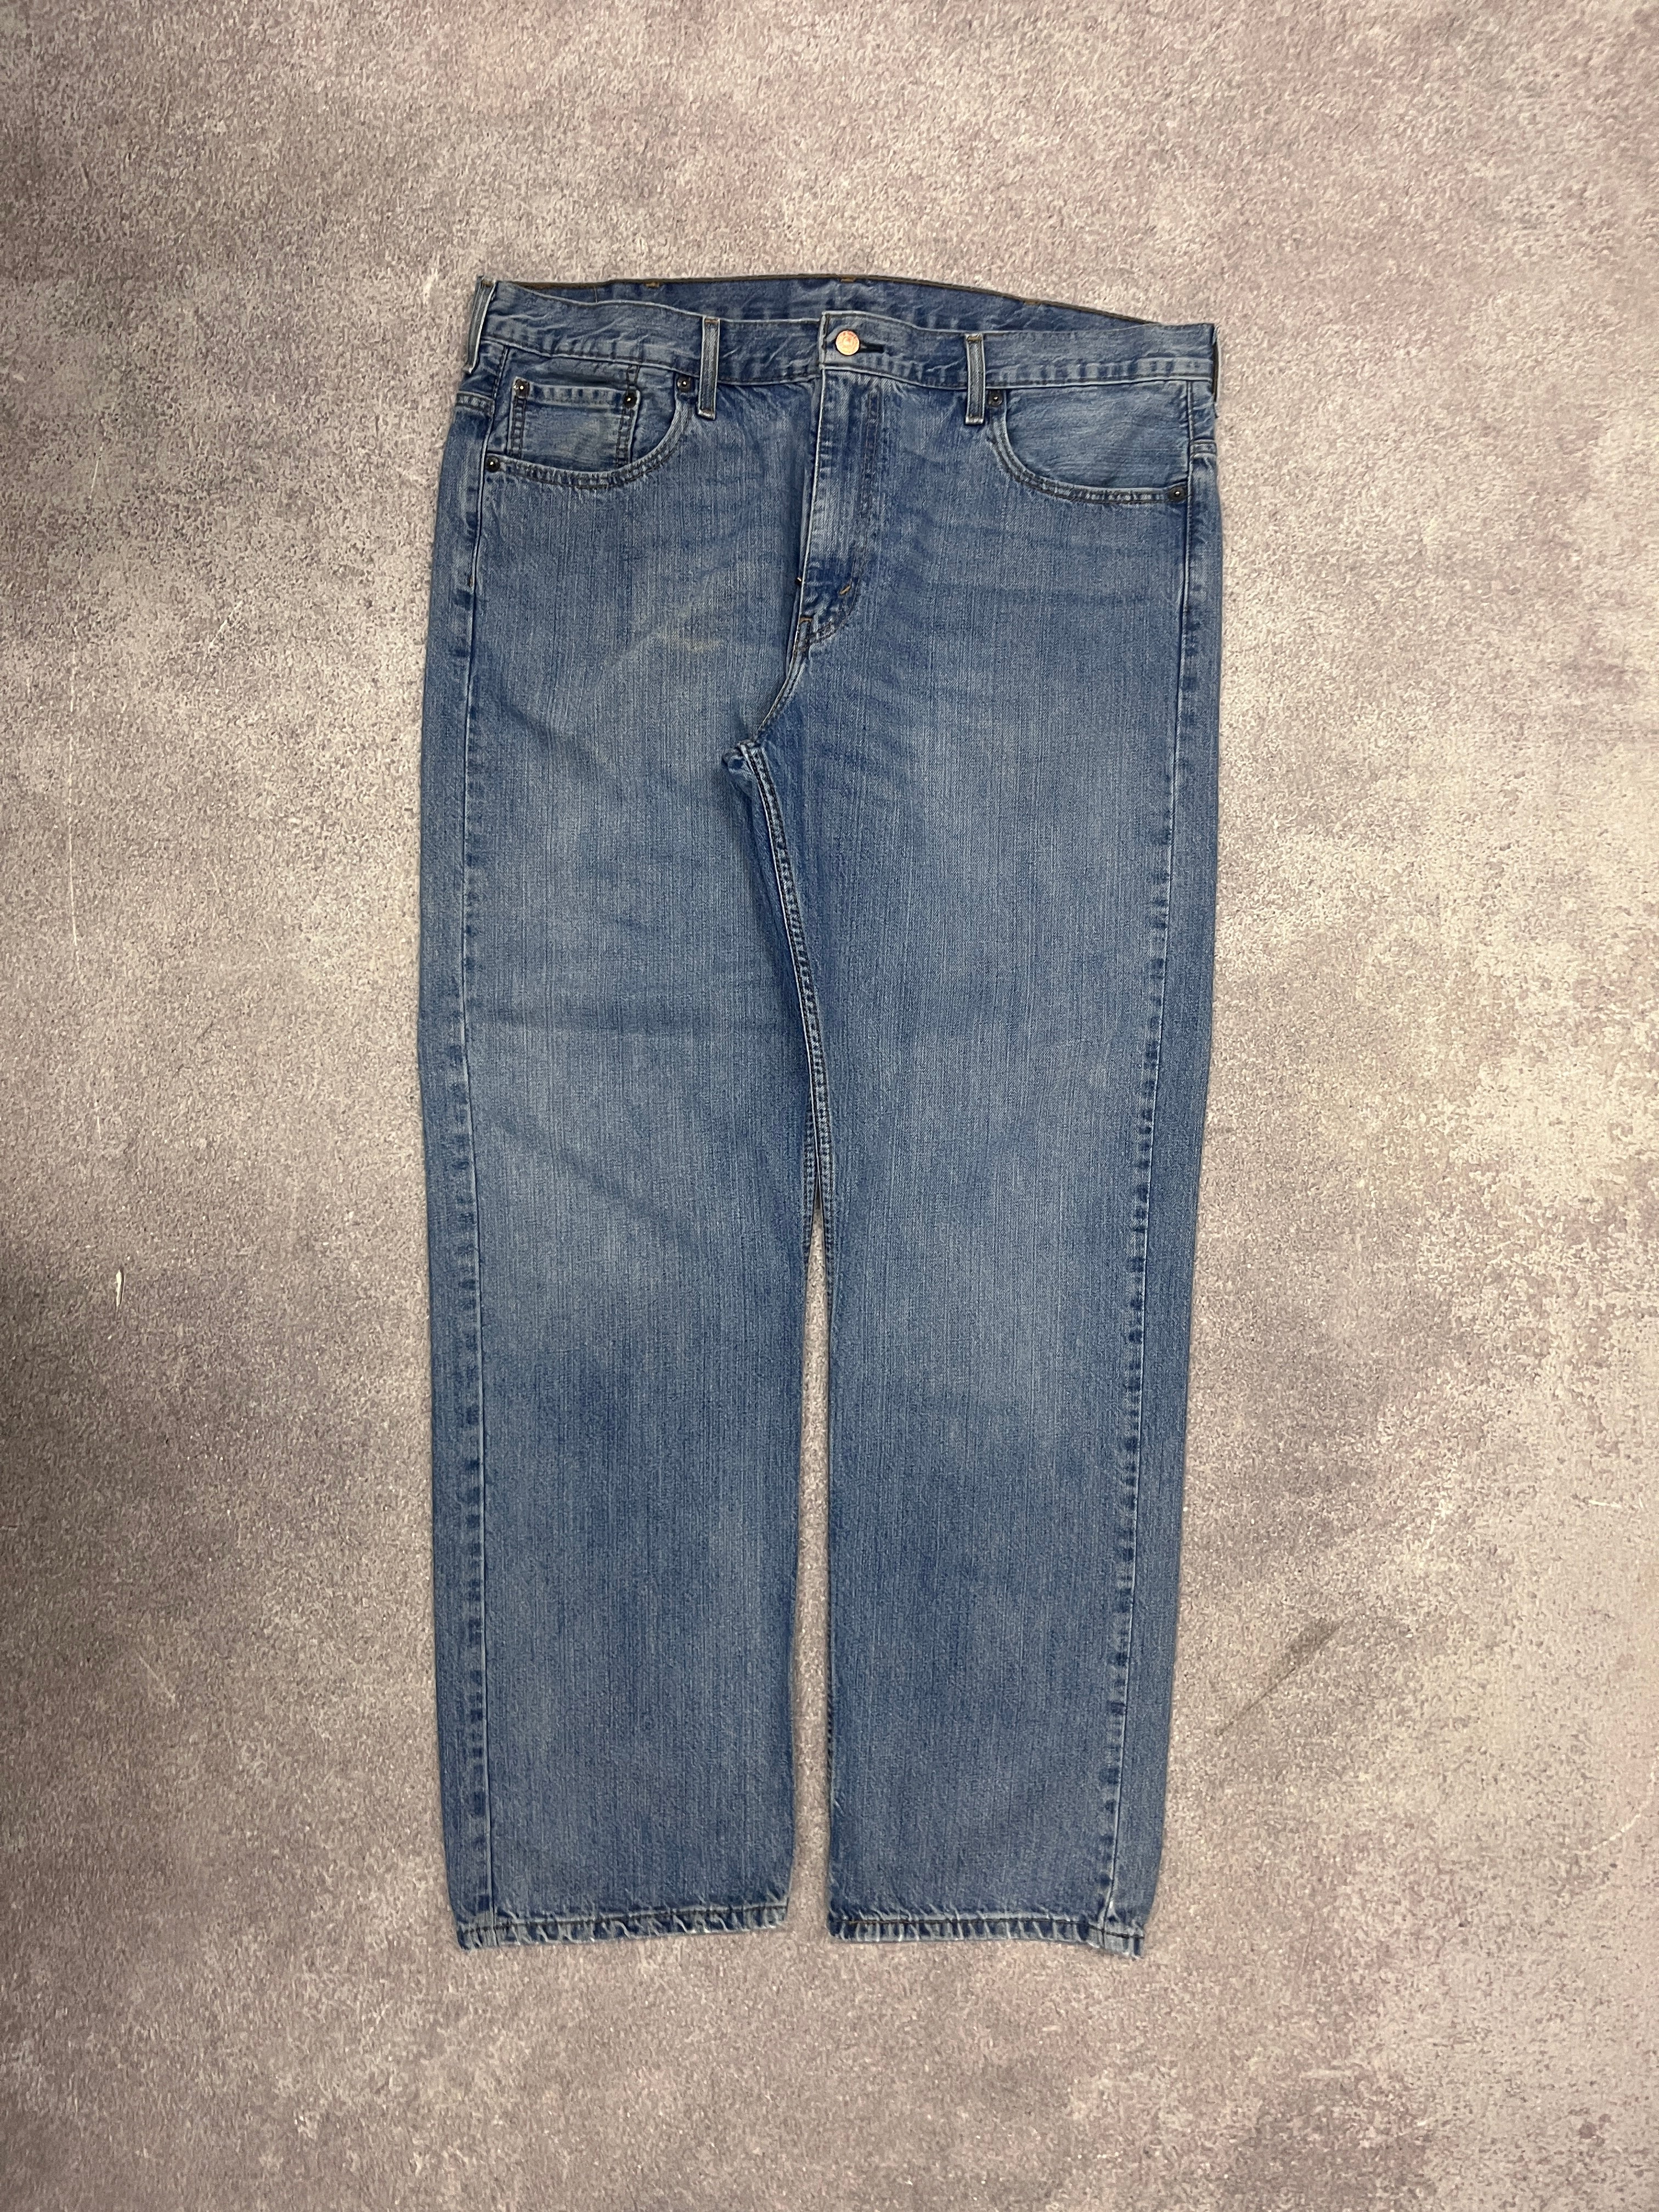 Vintage Levi 569 Denim Jeans Blue // W38 L34 - RHAGHOUSE VINTAGE